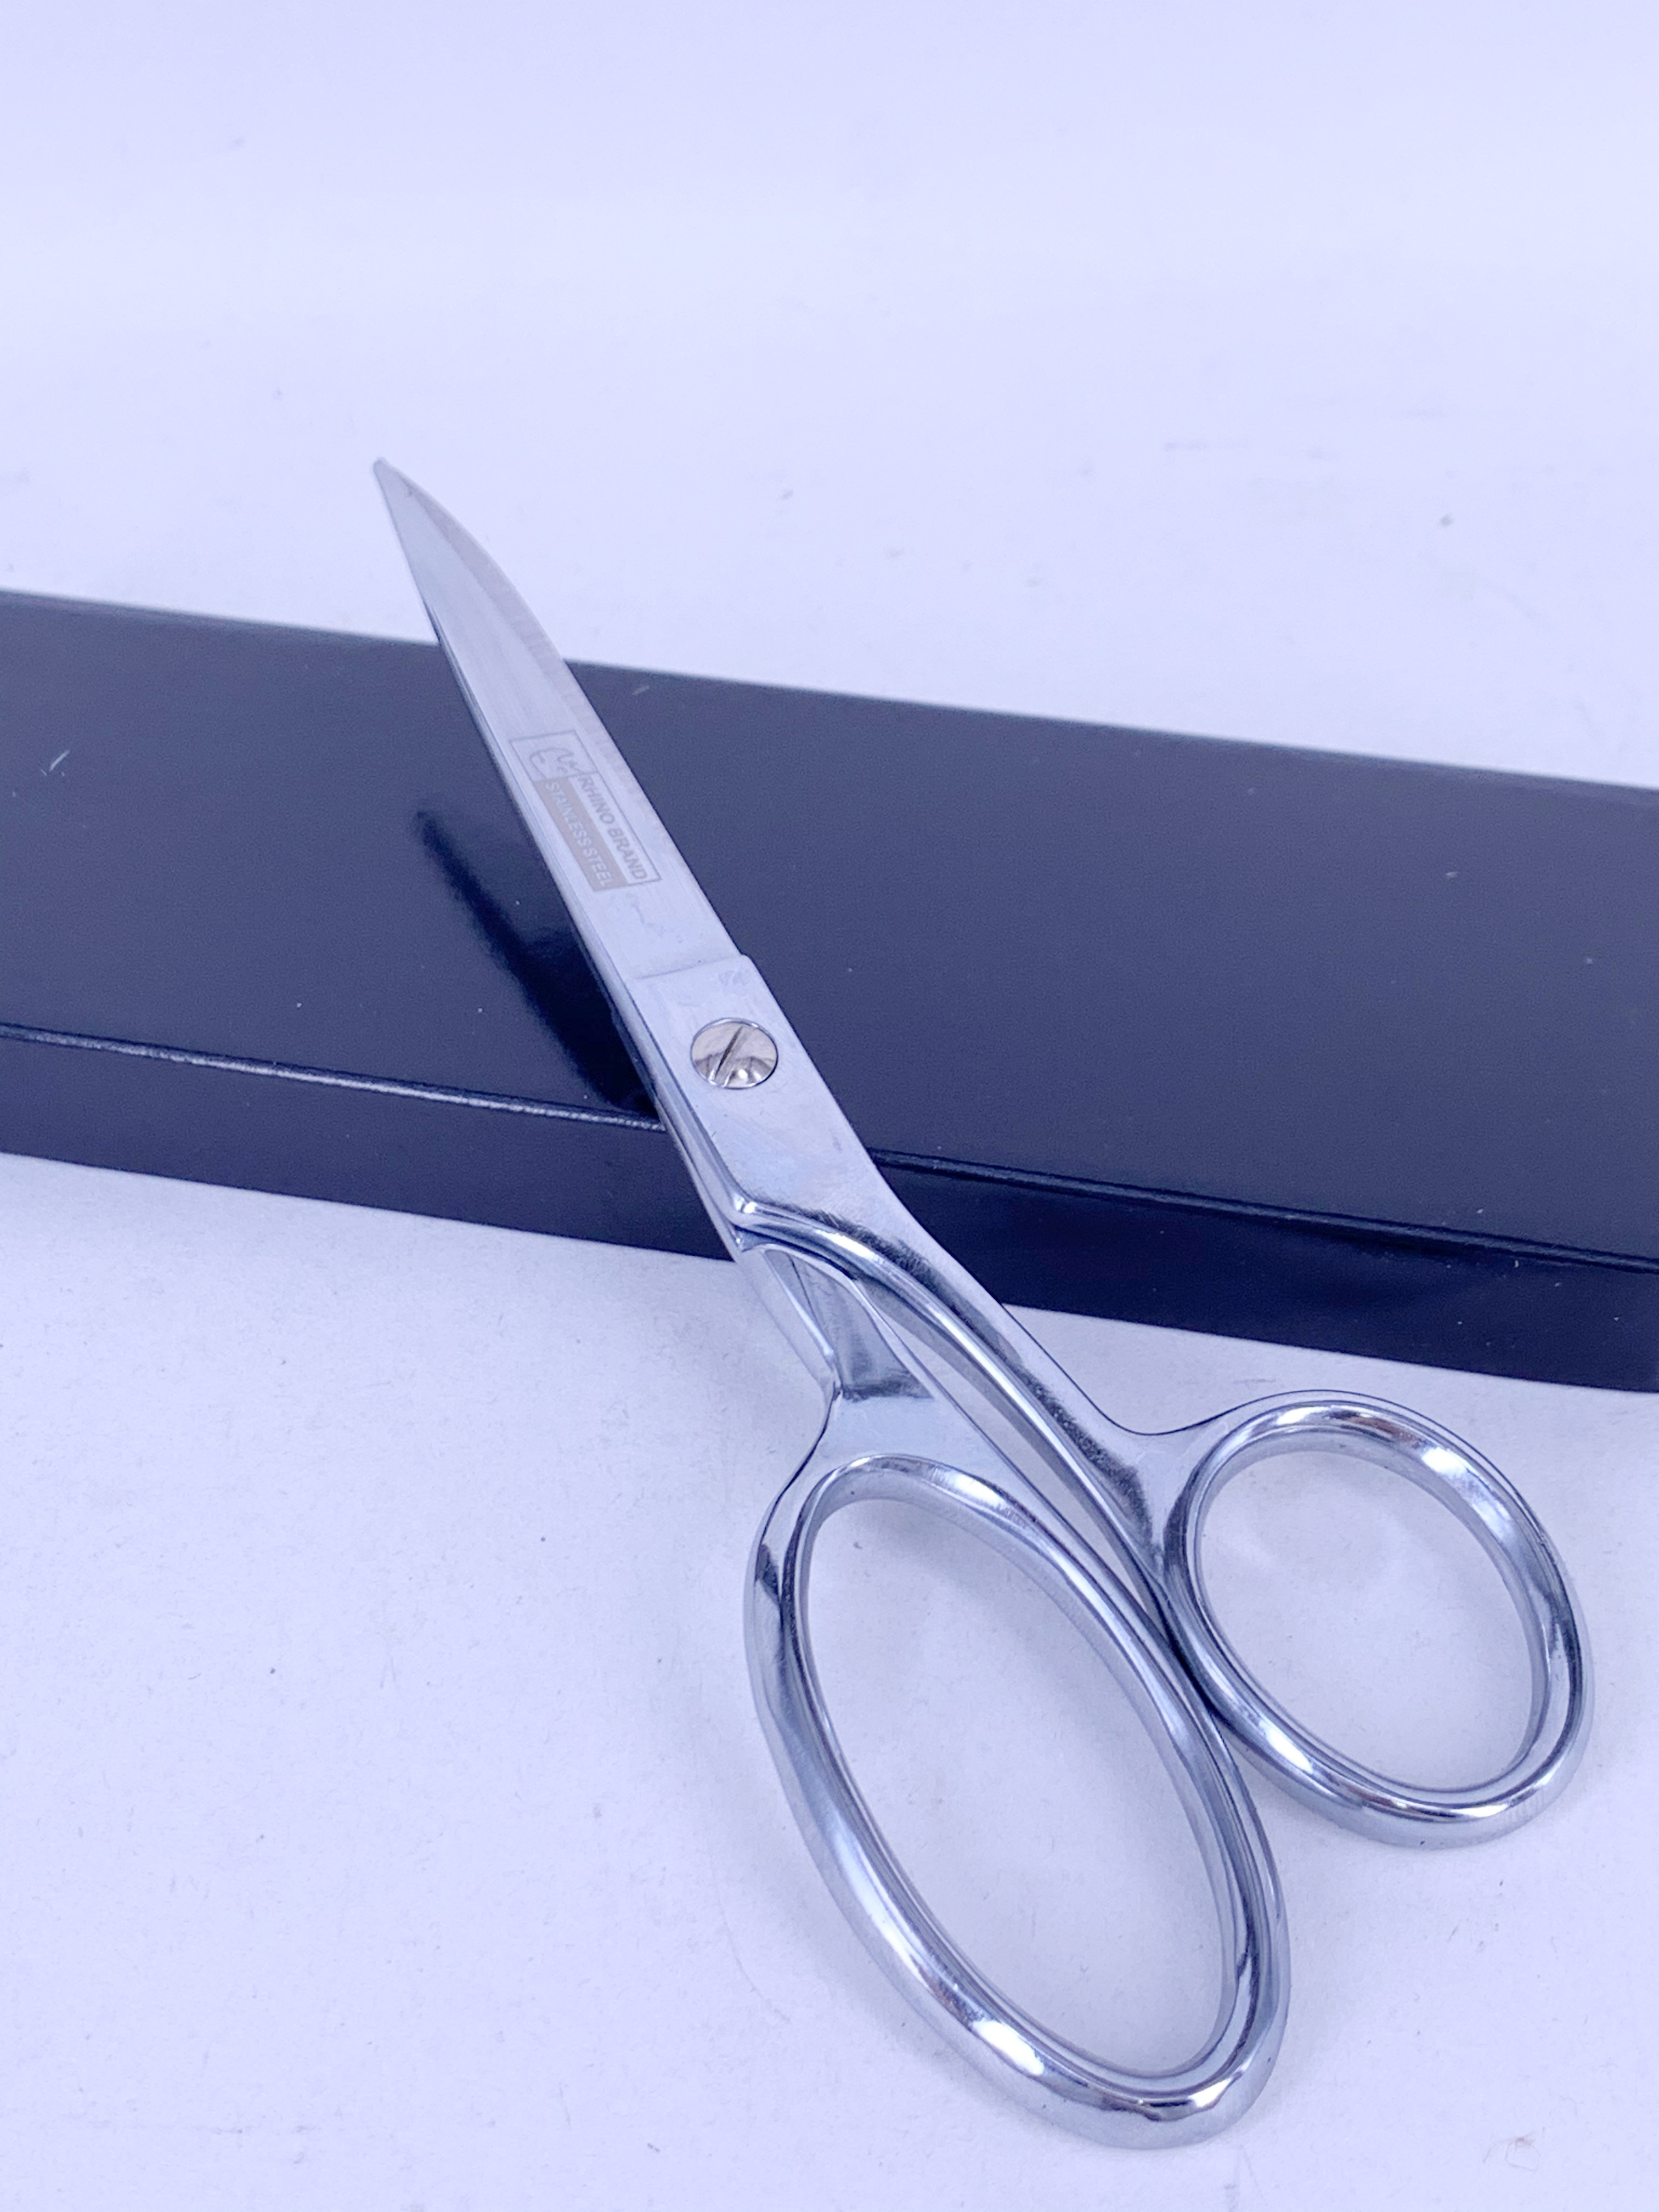 กรรไกรตัดผ้าคุณภาพสูงRHINO BRAND NO.815 ขนาด 8 นิ้ว (ใบมีดยาว 3 นิ้ว) ทำจากSTAINLESS STEEL เกรด A คมและทนทานสูง